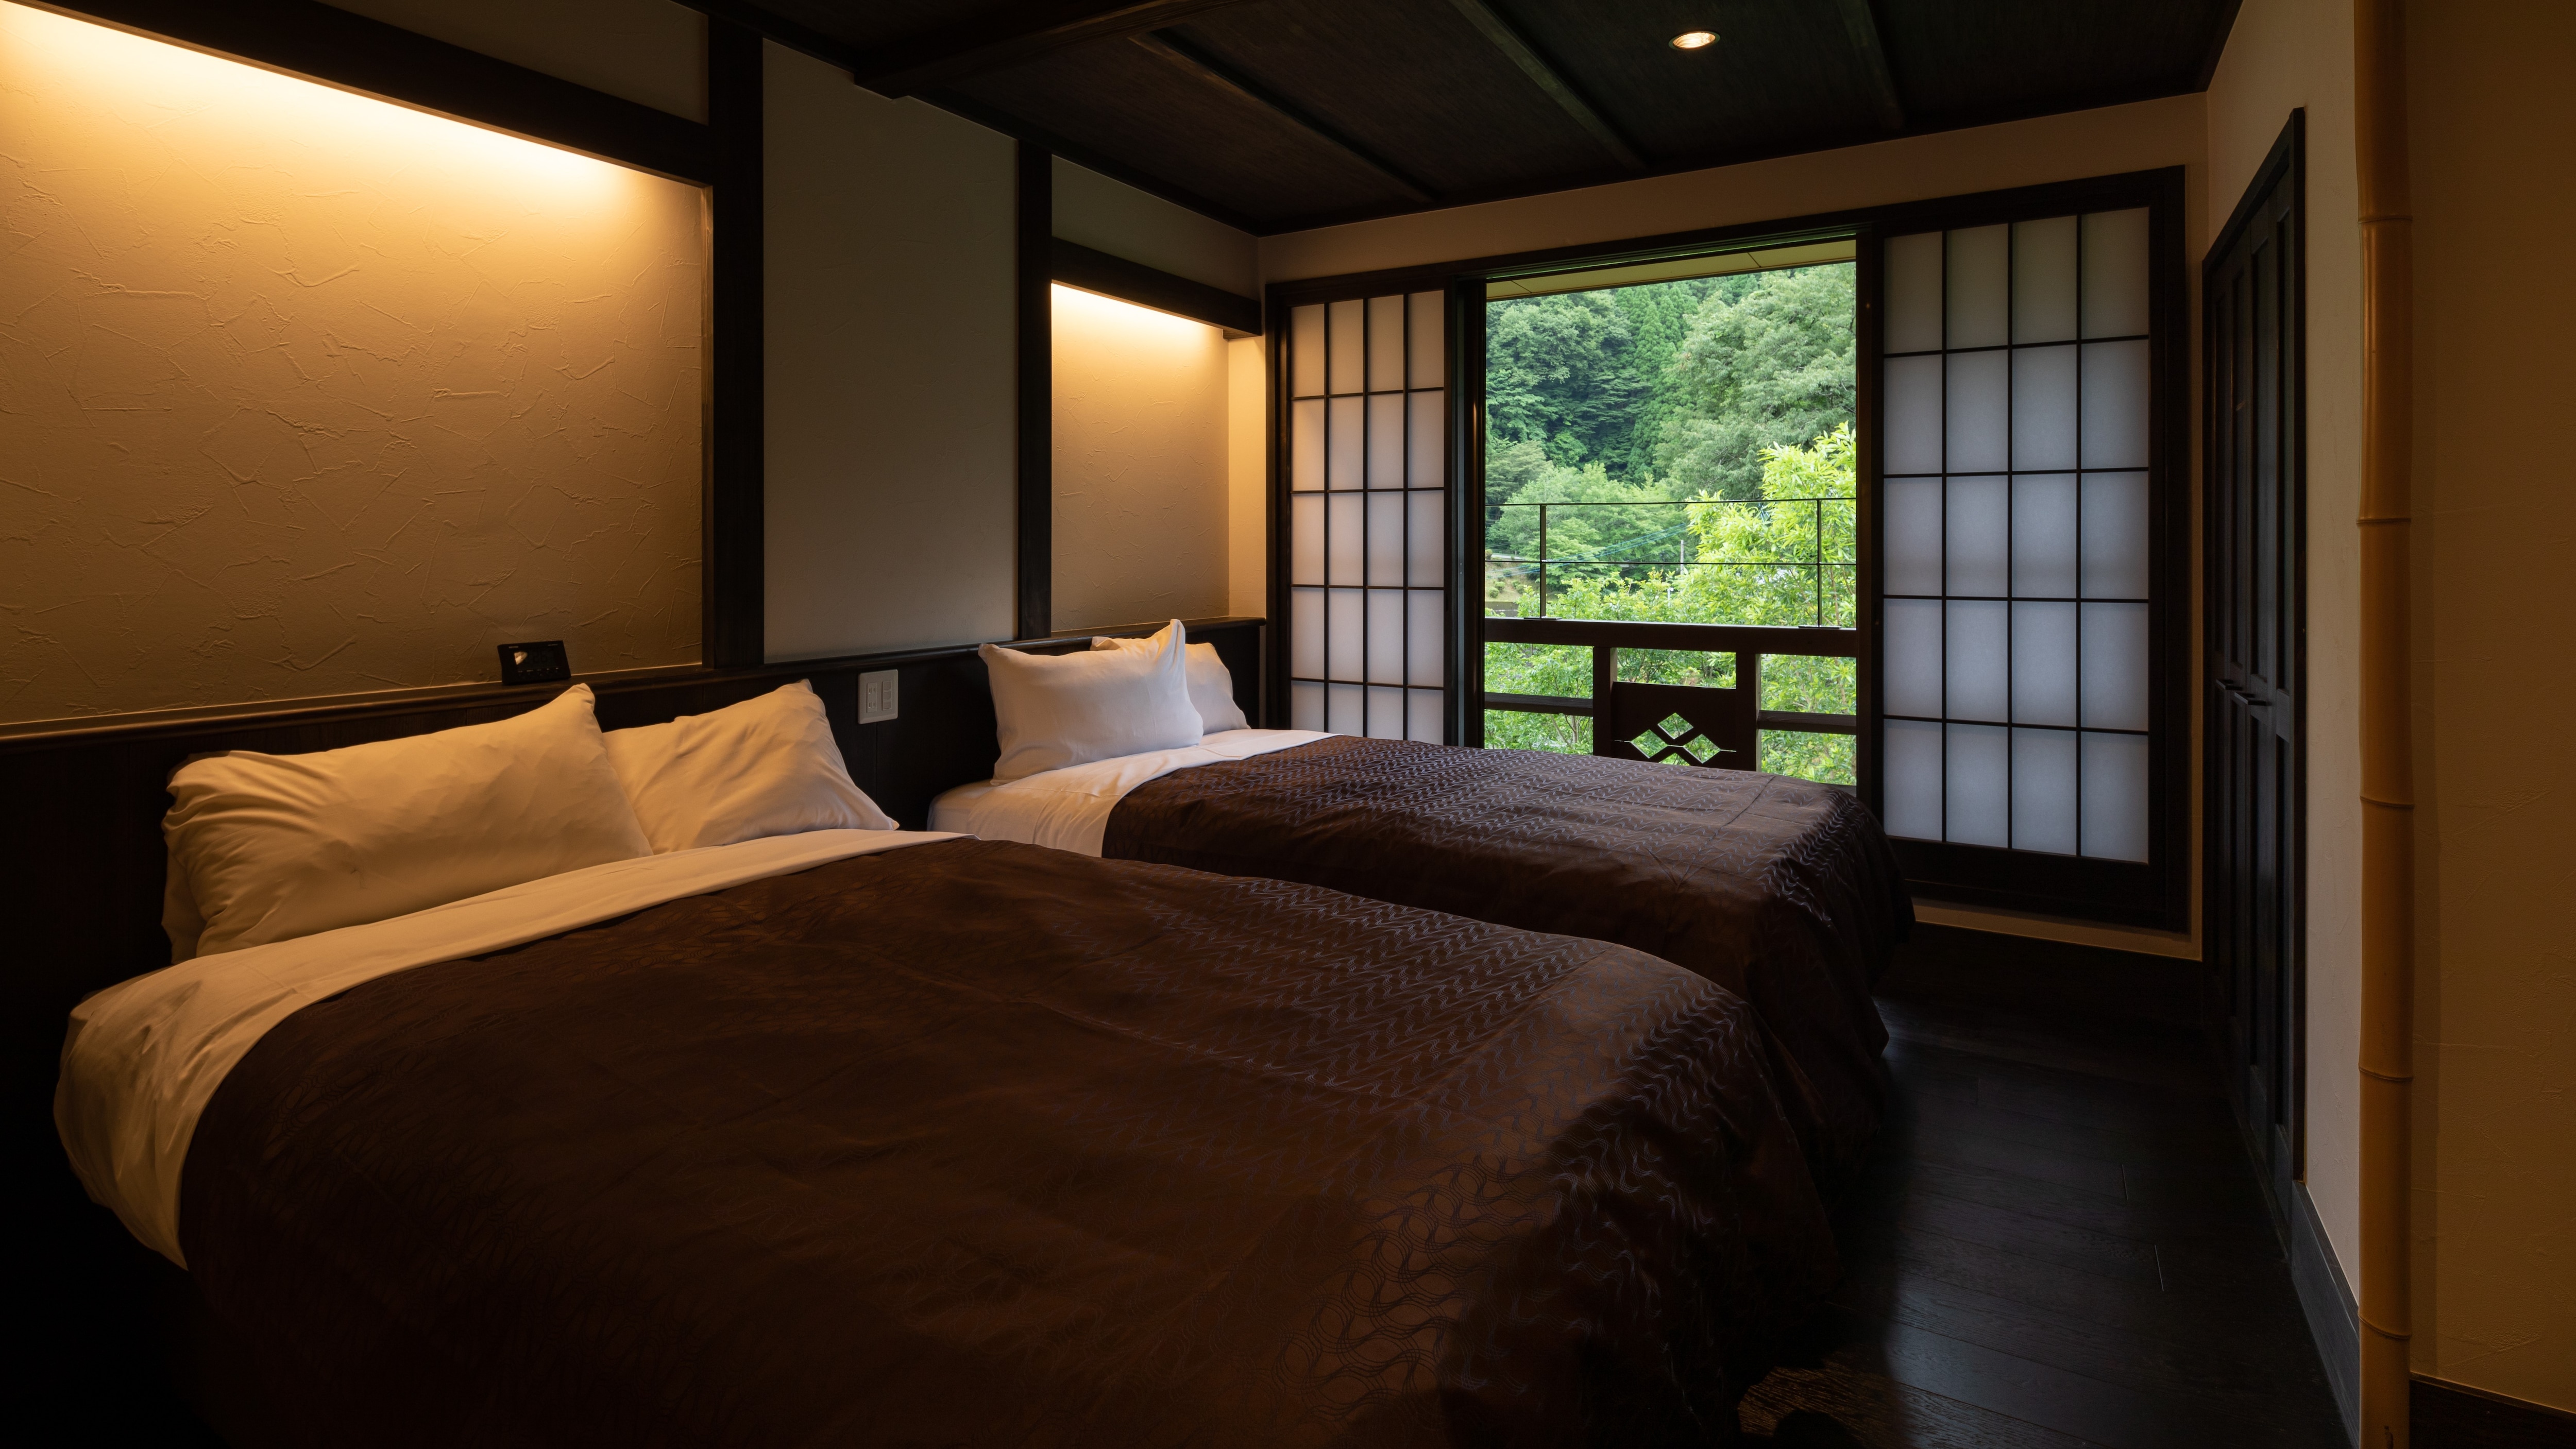 日式和西式房間 II 的例子。這種類型有3個房間。